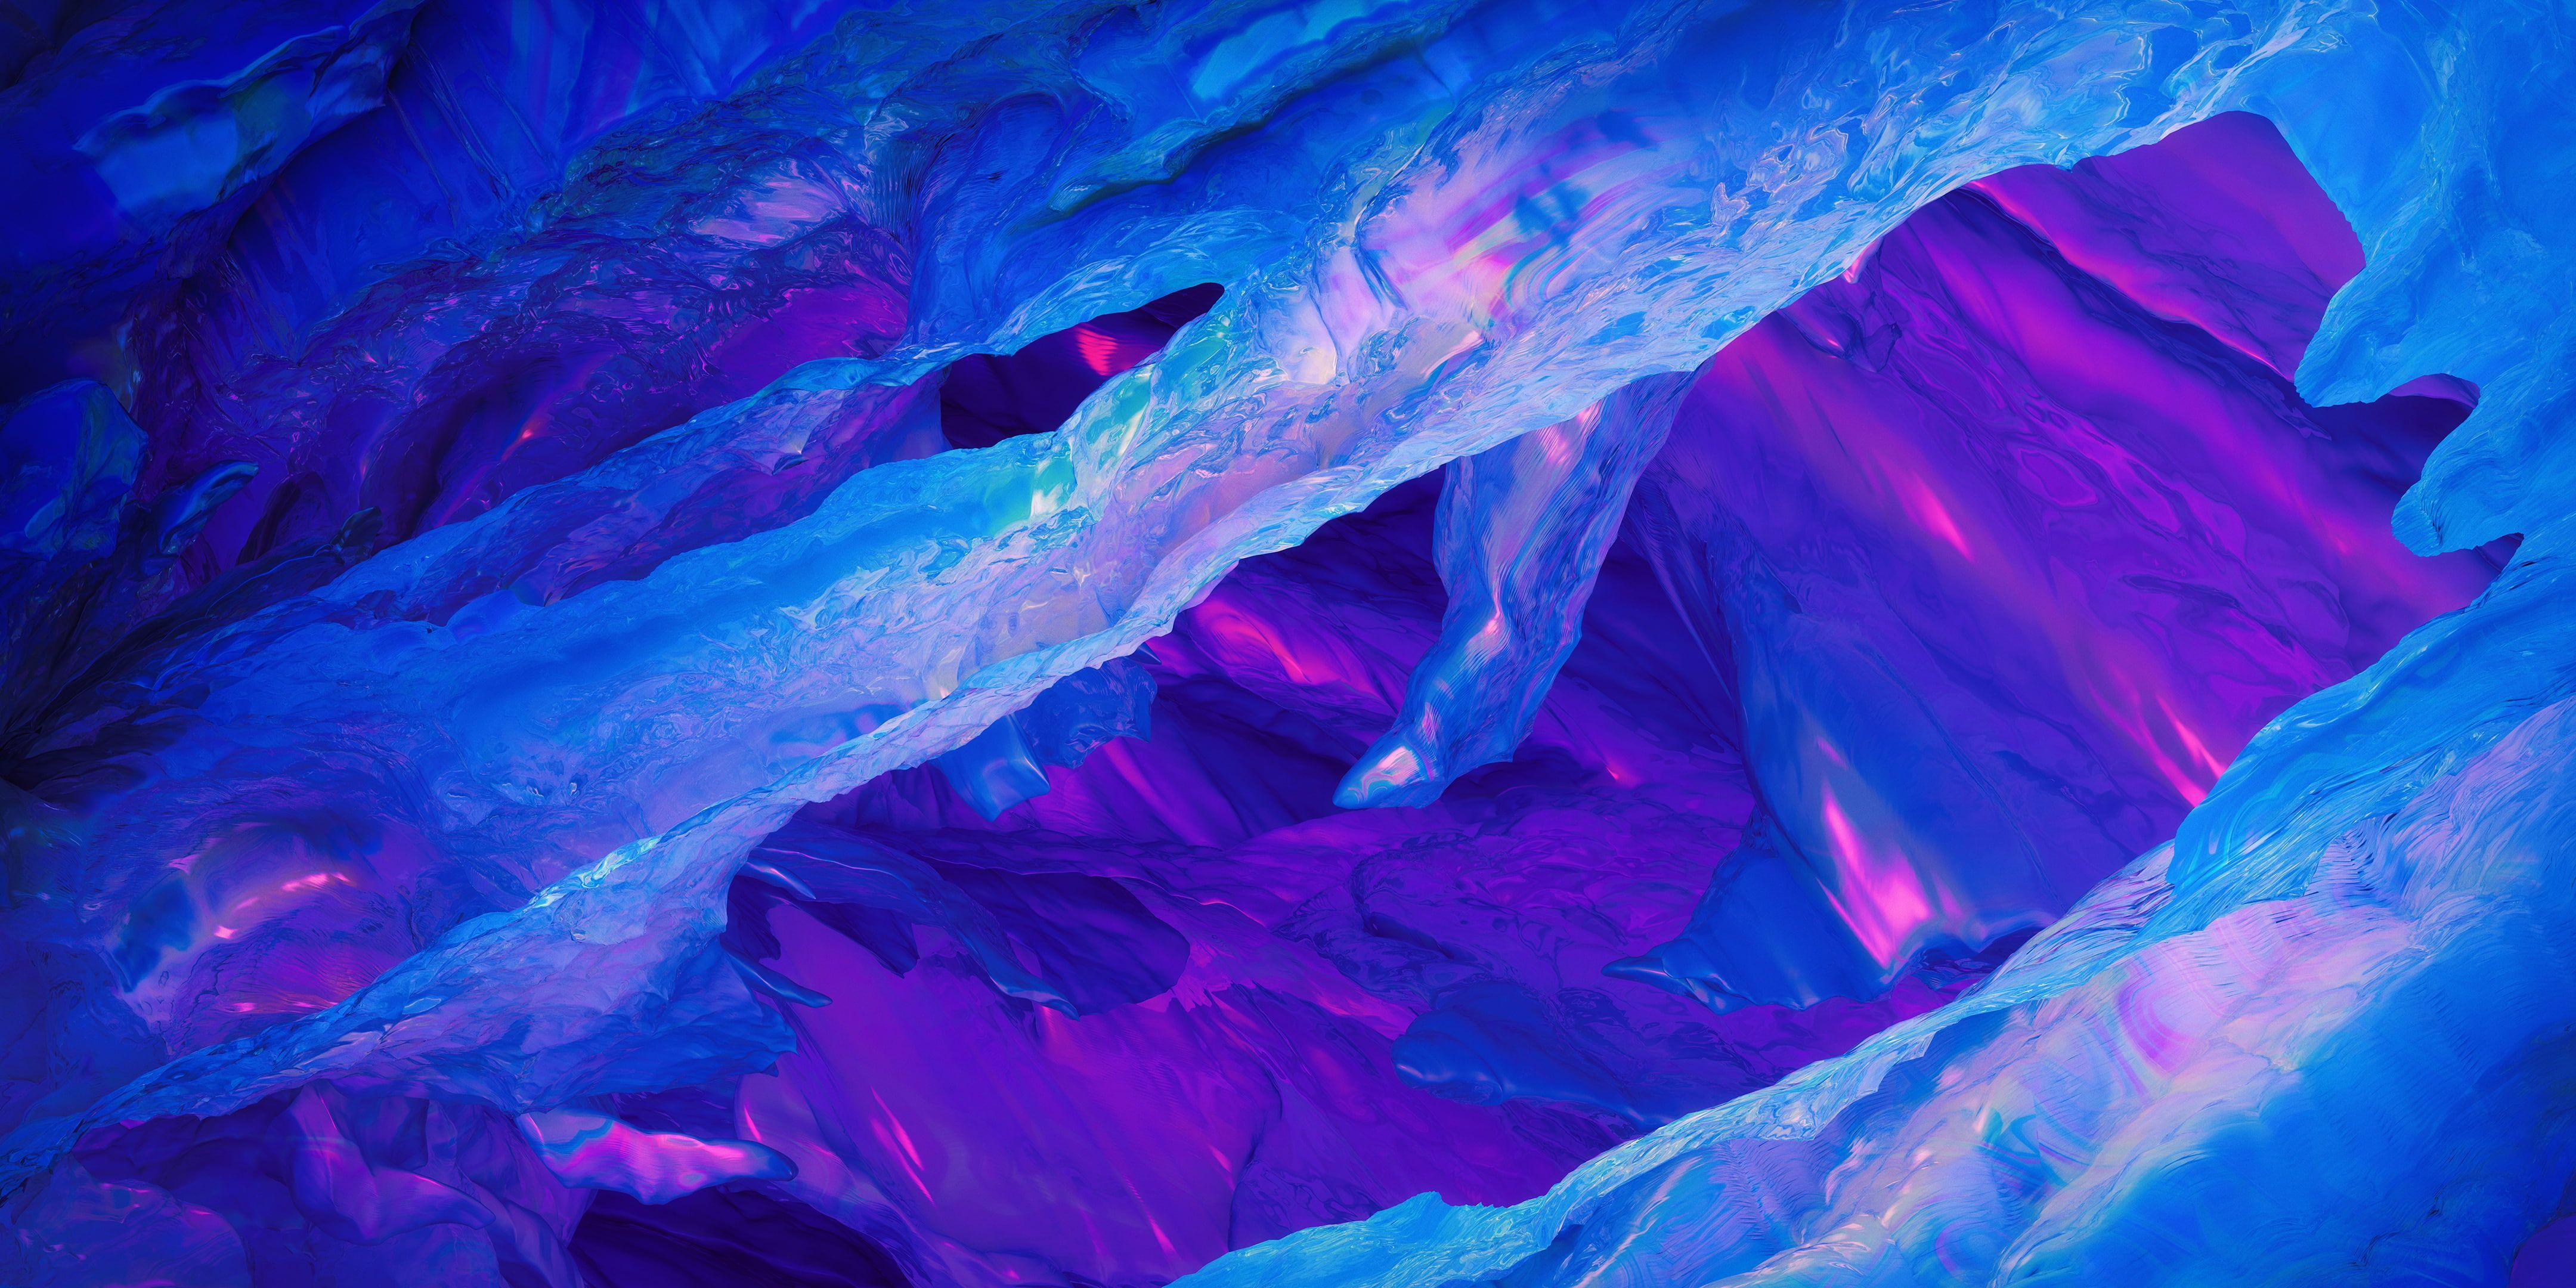 Blue OnePlus 5T #Stock #Ice #Purple #Neon K #Frost K